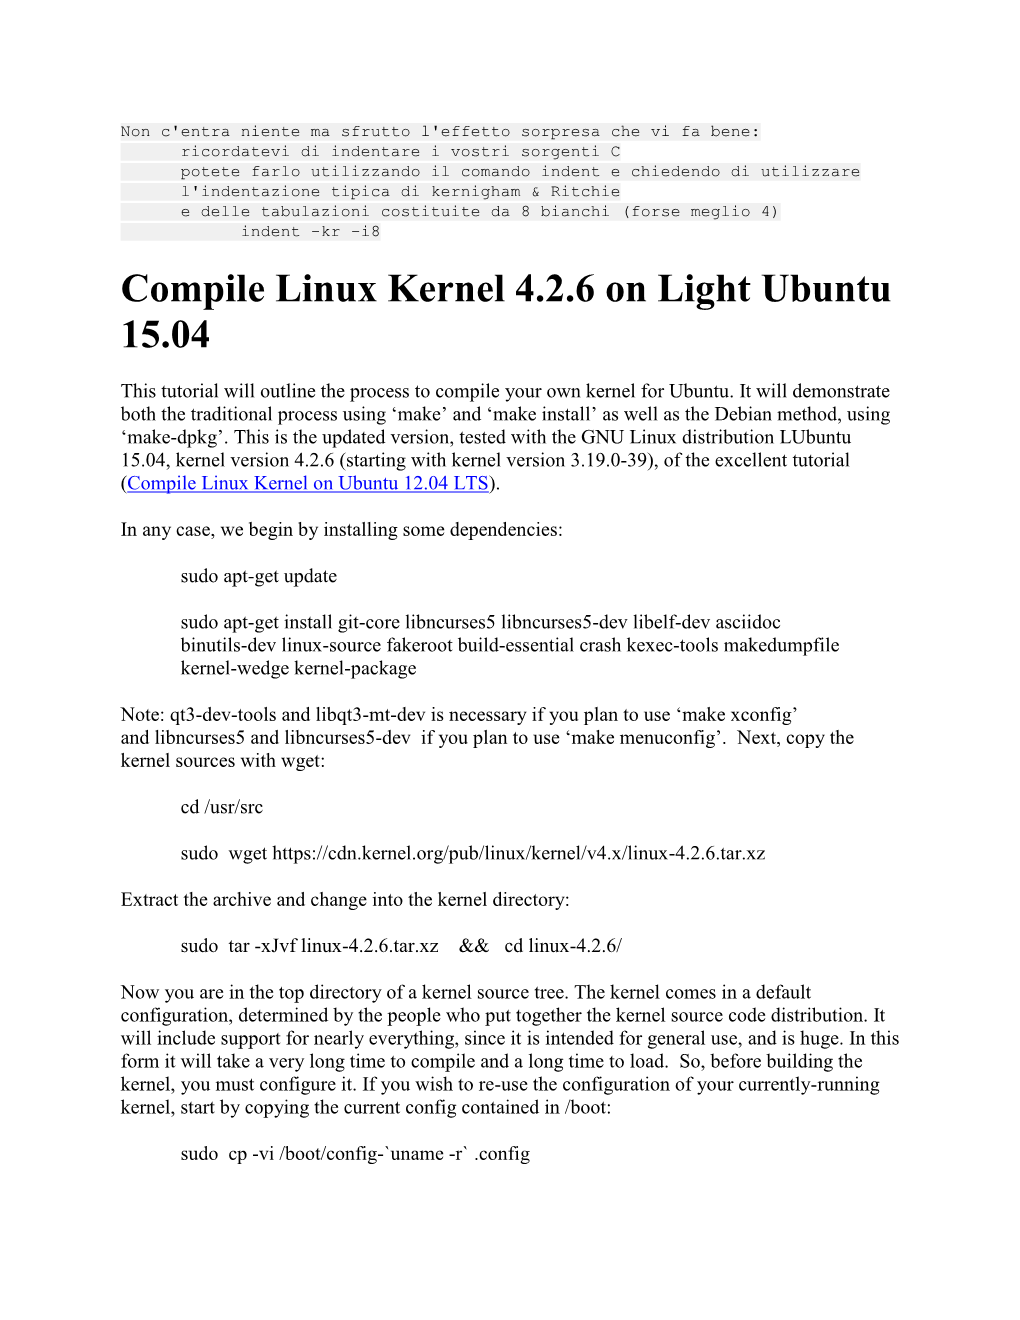 Compile Linux Kernel on Ubuntu 12.04 LTS (Detailed)